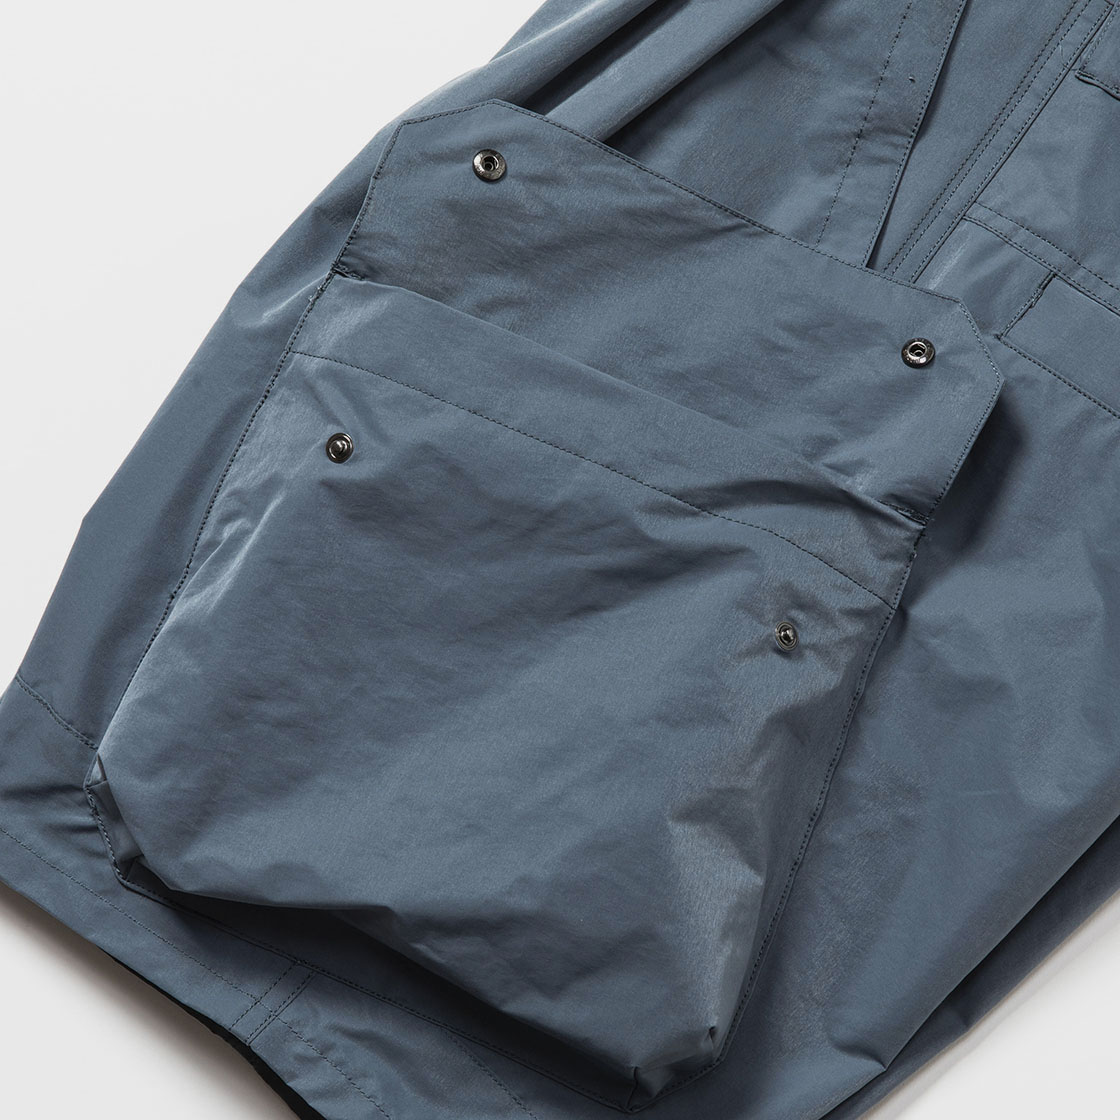 Crisp Nylon Luggage Cargo Shorts / Blue Grey